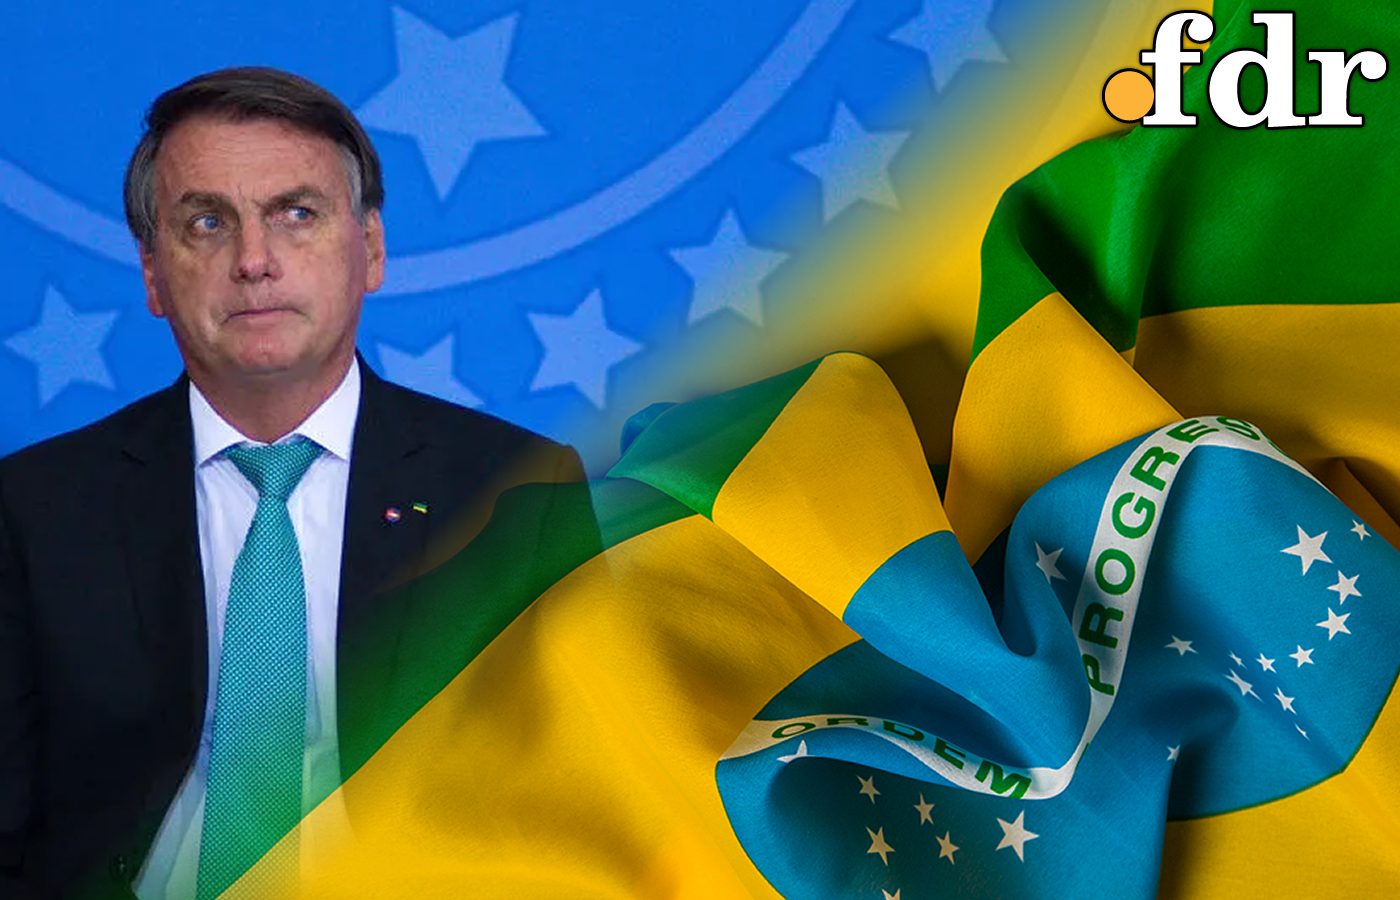 Agenda social do governo: Saiba o que Bolsonaro está preparando para os mais pobres (Imagem: FDR)